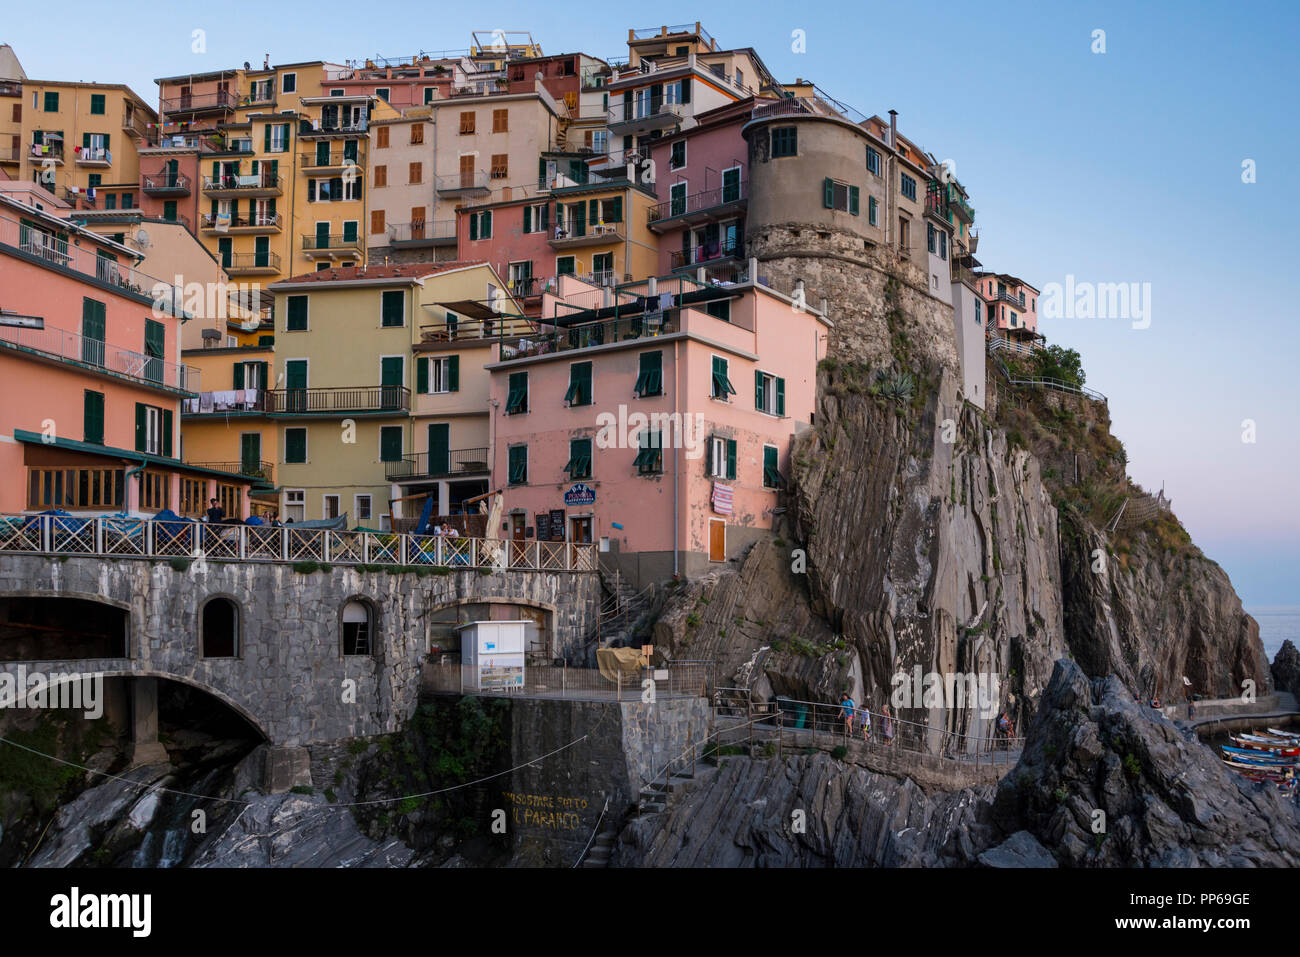 Spektakuläre Aussicht auf die Häuser auf Felsen gebaut, Manarola, Ligurien, Italien Stockfoto